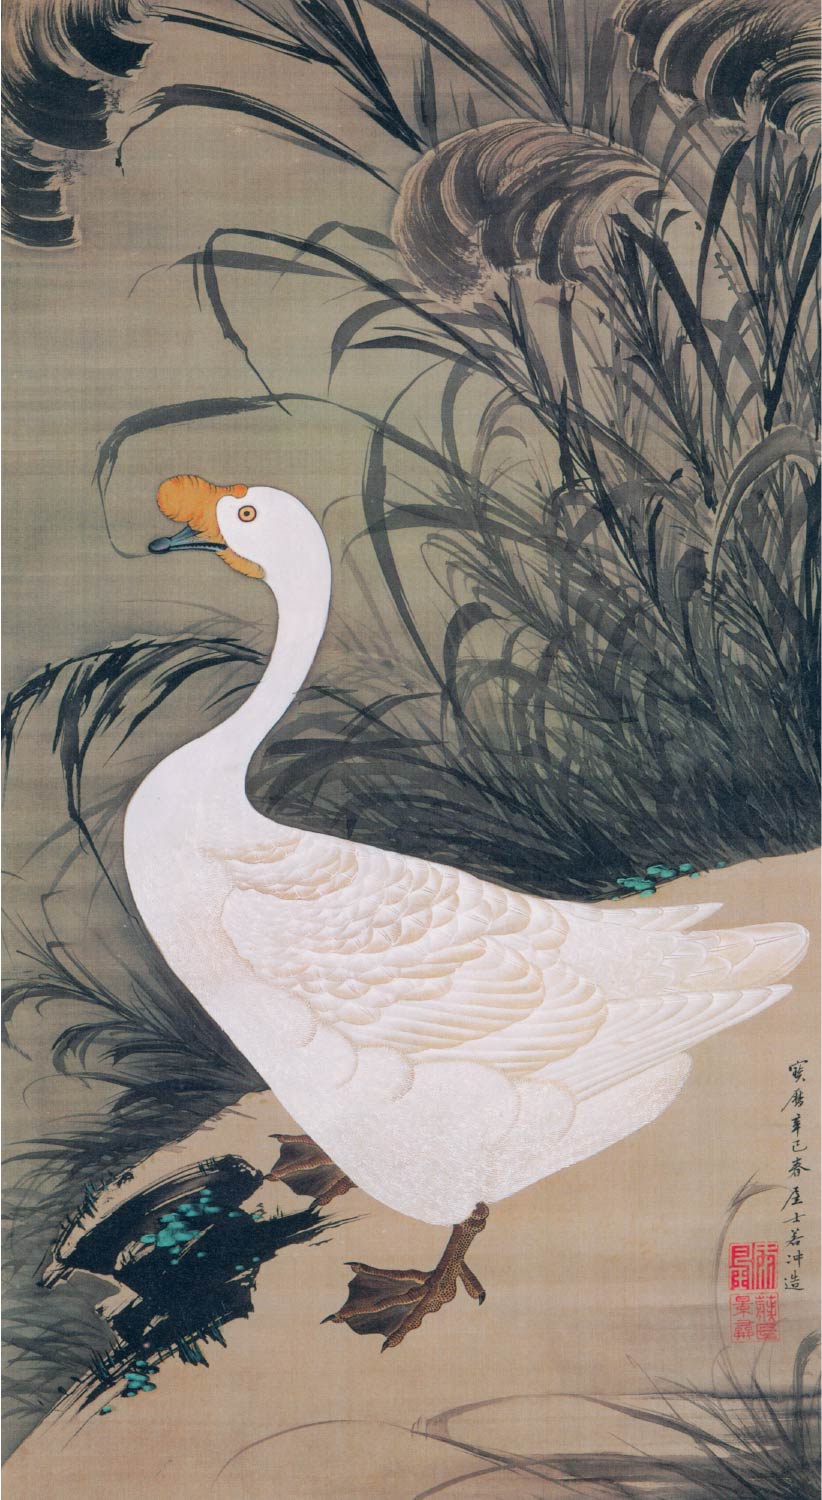 【無料壁紙】伊藤 若冲「芦鵞図 (1761)」 / Ito Jakuchu_Ro Ga-zu (Goose and Reeds) (1761)